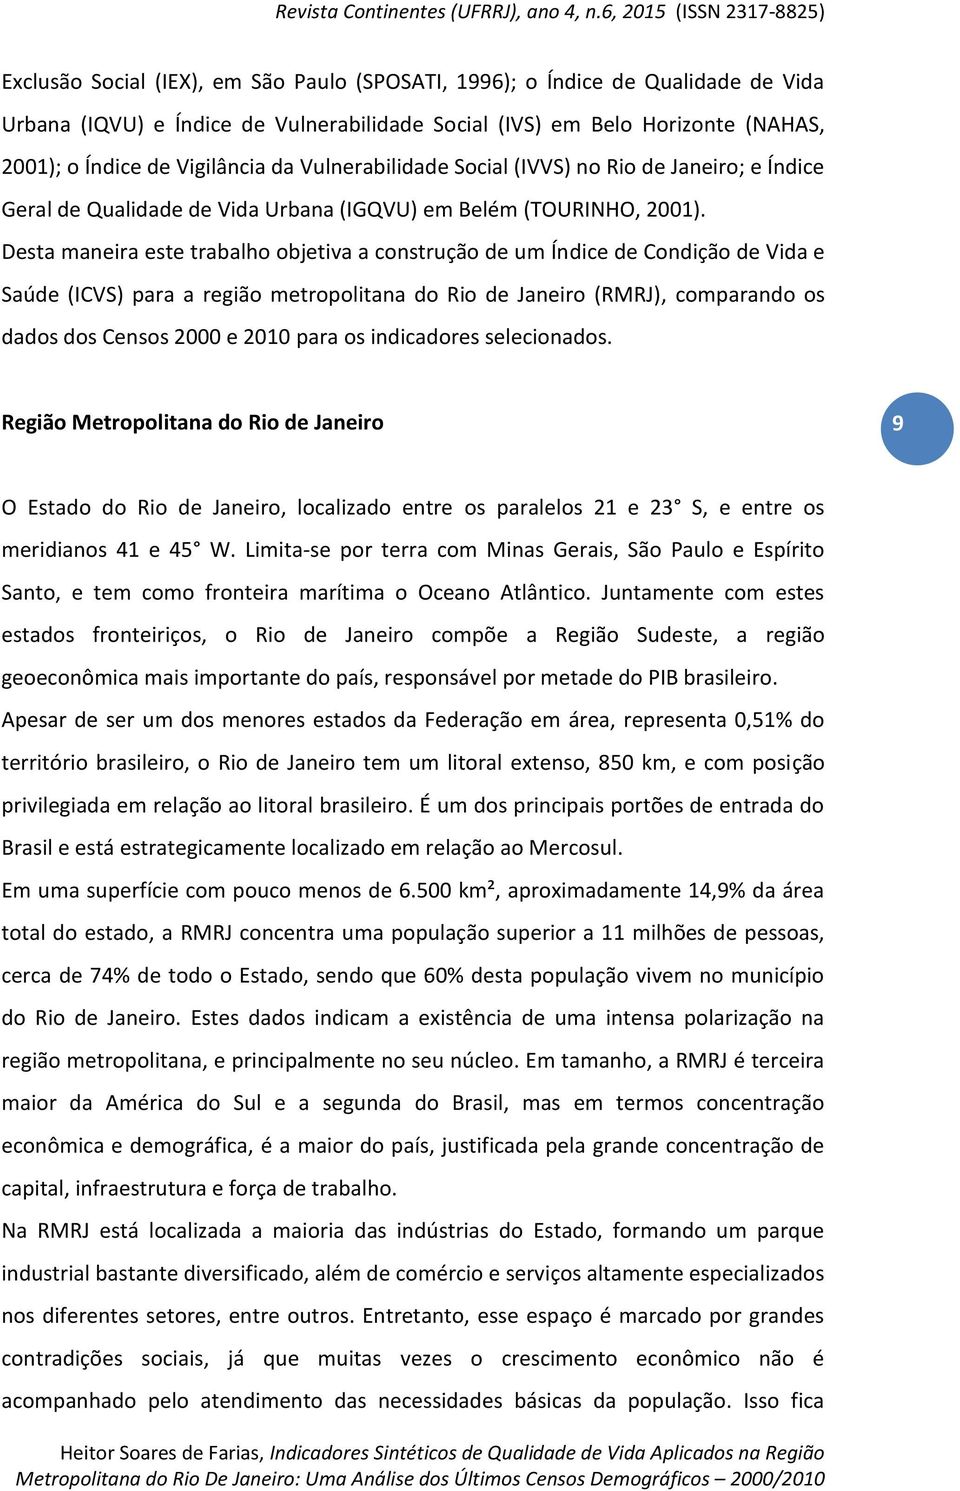 Desta maneira este trabalho objetiva a construção de um Índice de Condição de Vida e Saúde (ICVS) para a região metropolitana do Rio de Janeiro (RMRJ), comparando os dados dos Censos 2000 e 2010 para